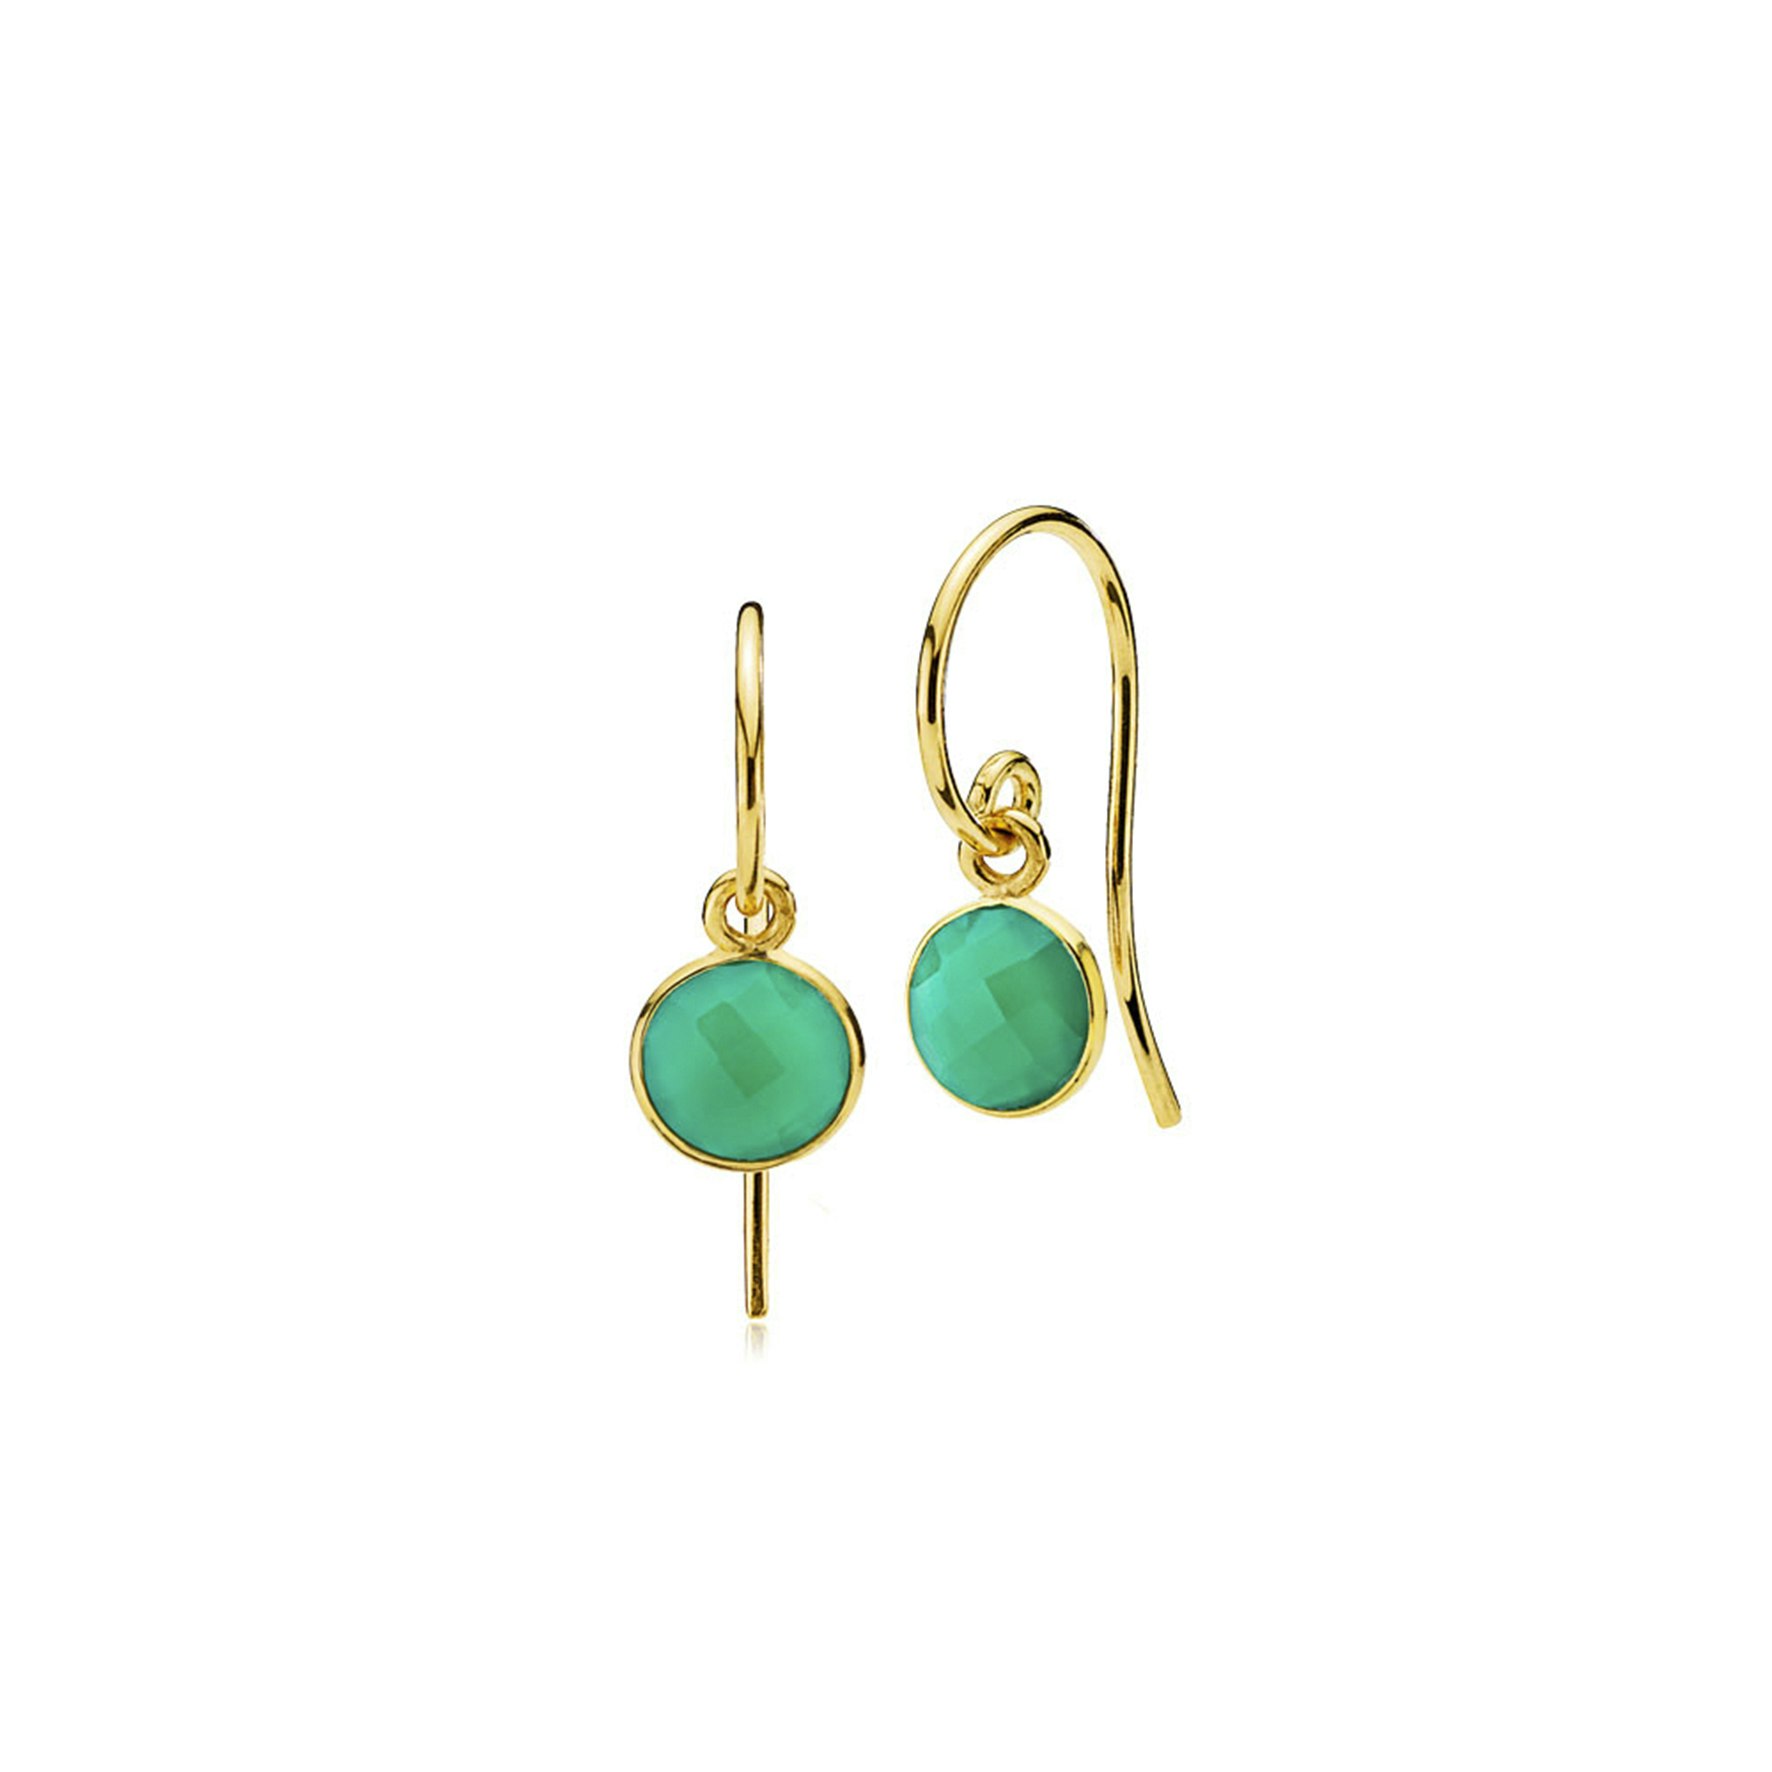 Prima Donna earrings Green onyx fra Izabel Camille i Forgylt-Sølv Sterling 925